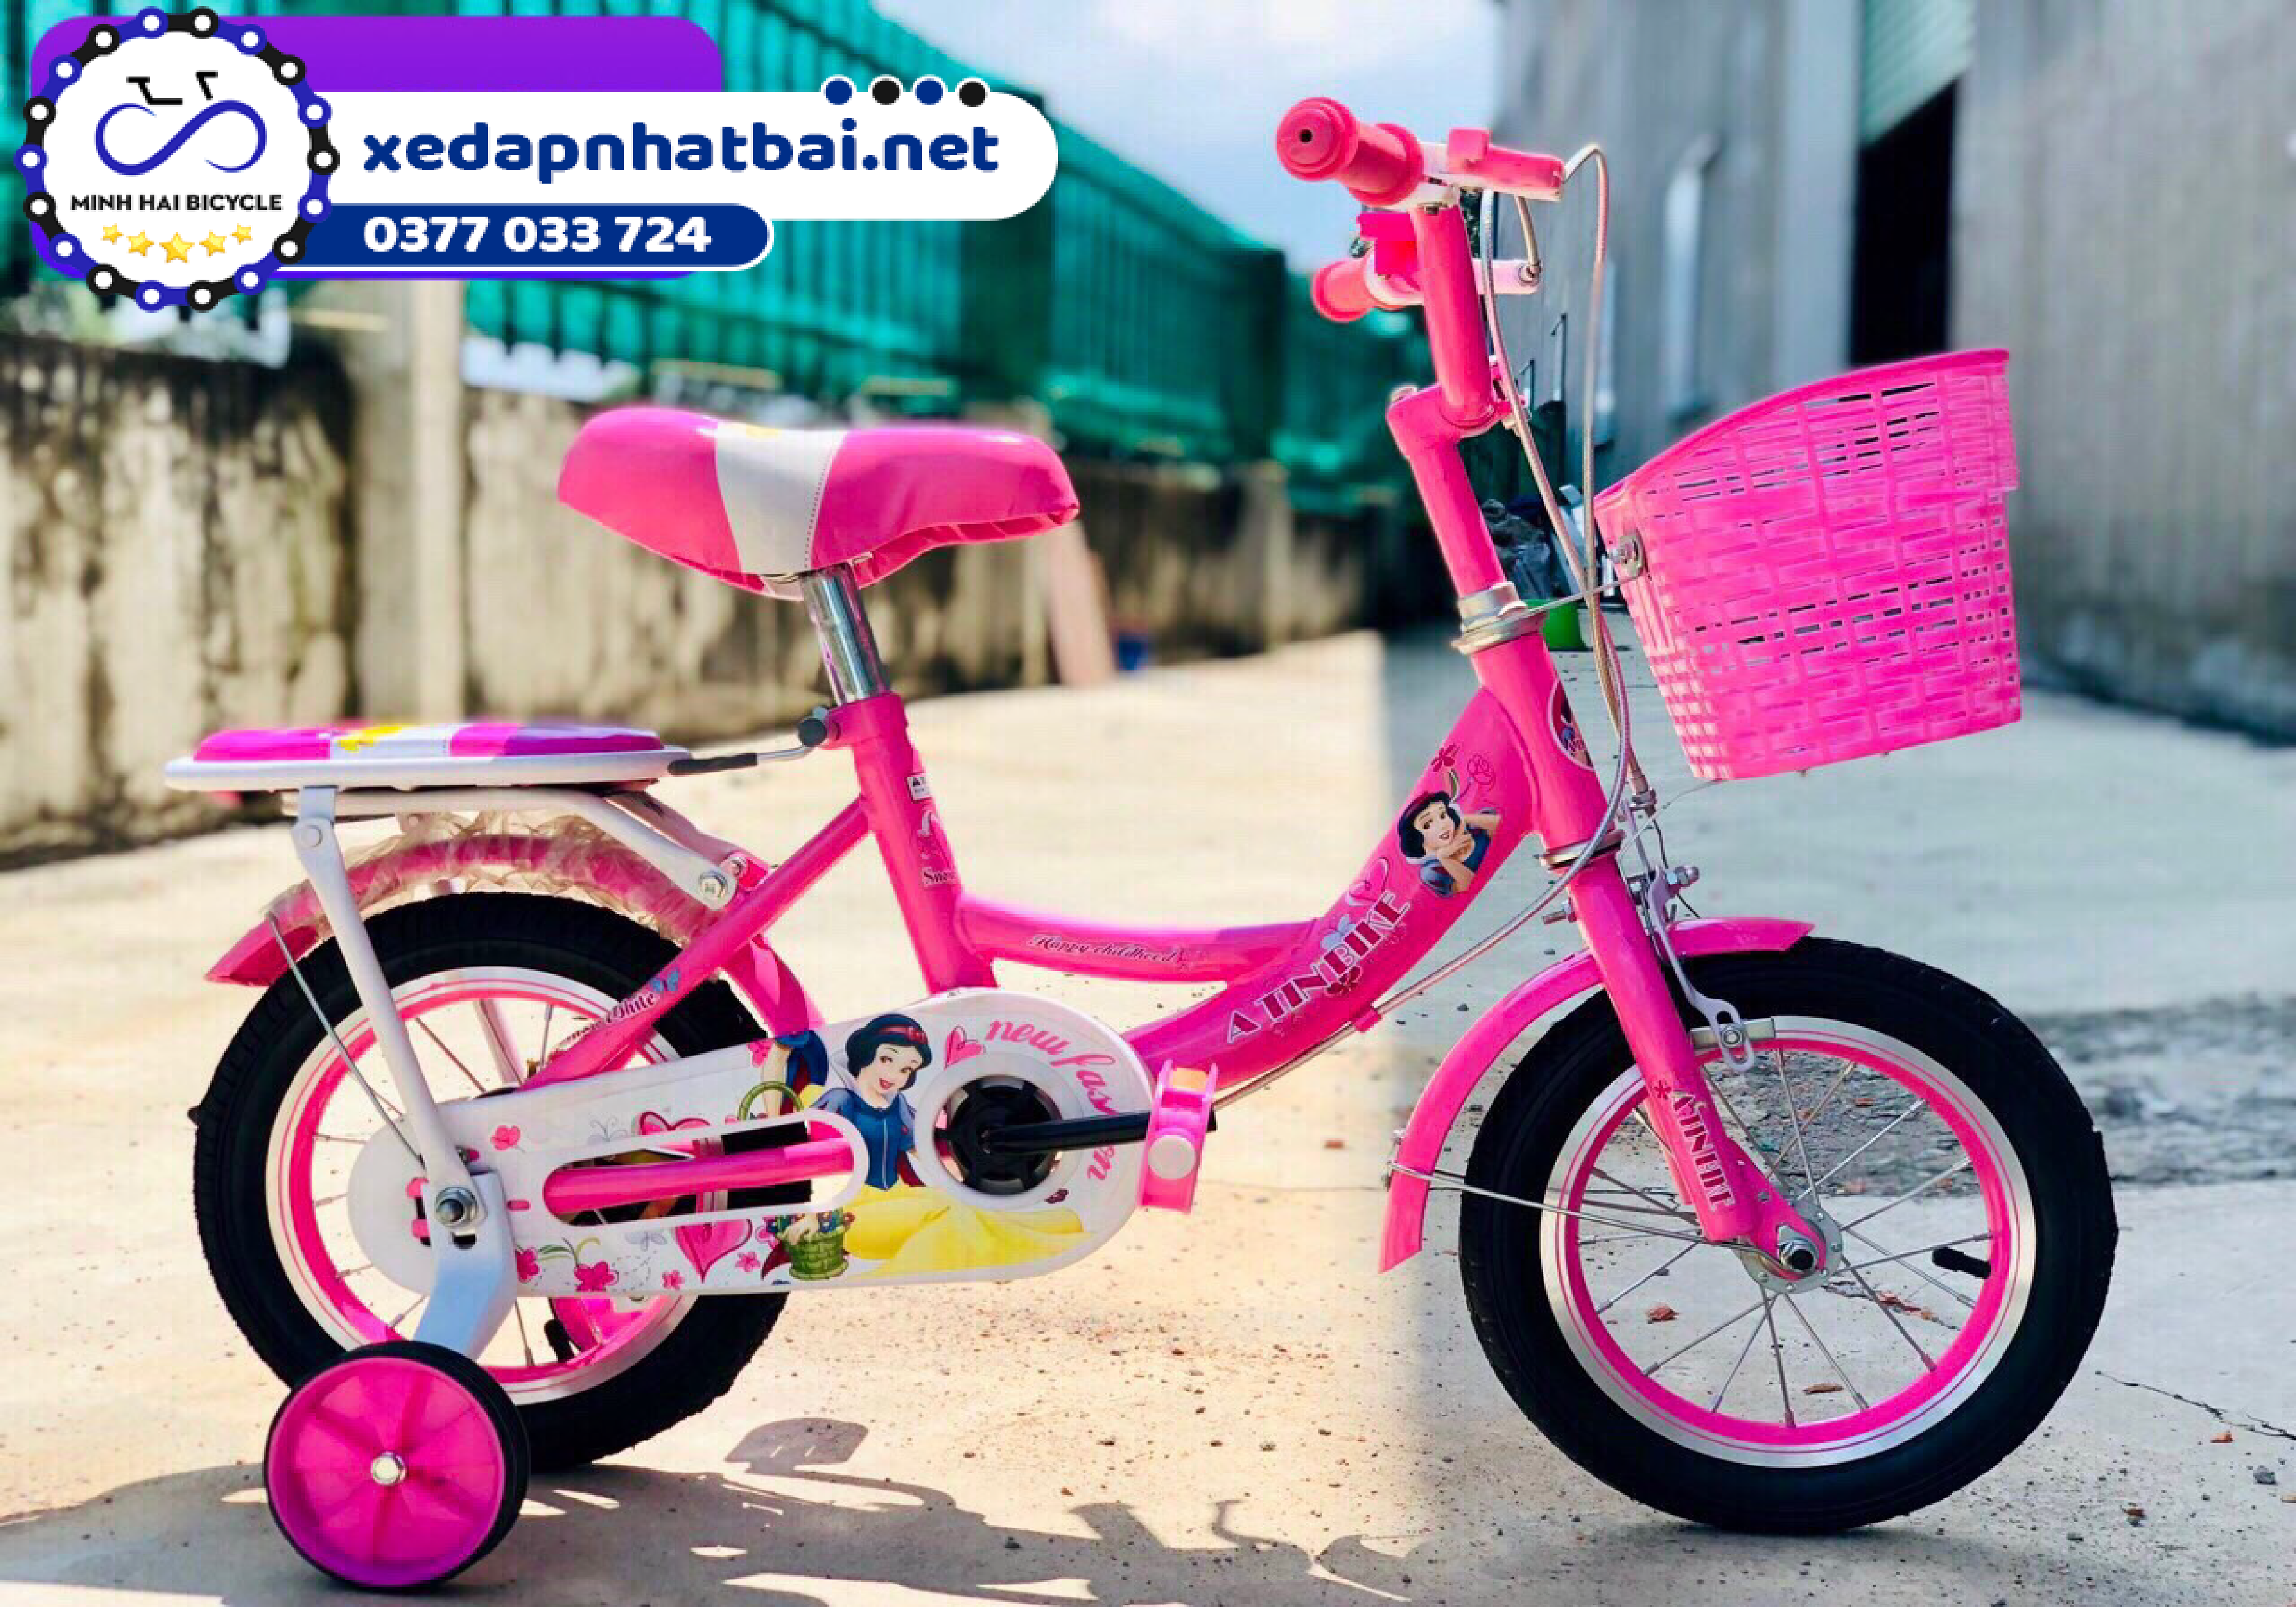 Xe đạp màu hồng cho bé 2 tuổi nữ, với những hình dáng công chúa xinh xắn, được cách điệu thêm màu trắng nhẹ nhàng, chính là lựa chọn hoàn hảo nhất của bố mẹ dành cho các bé